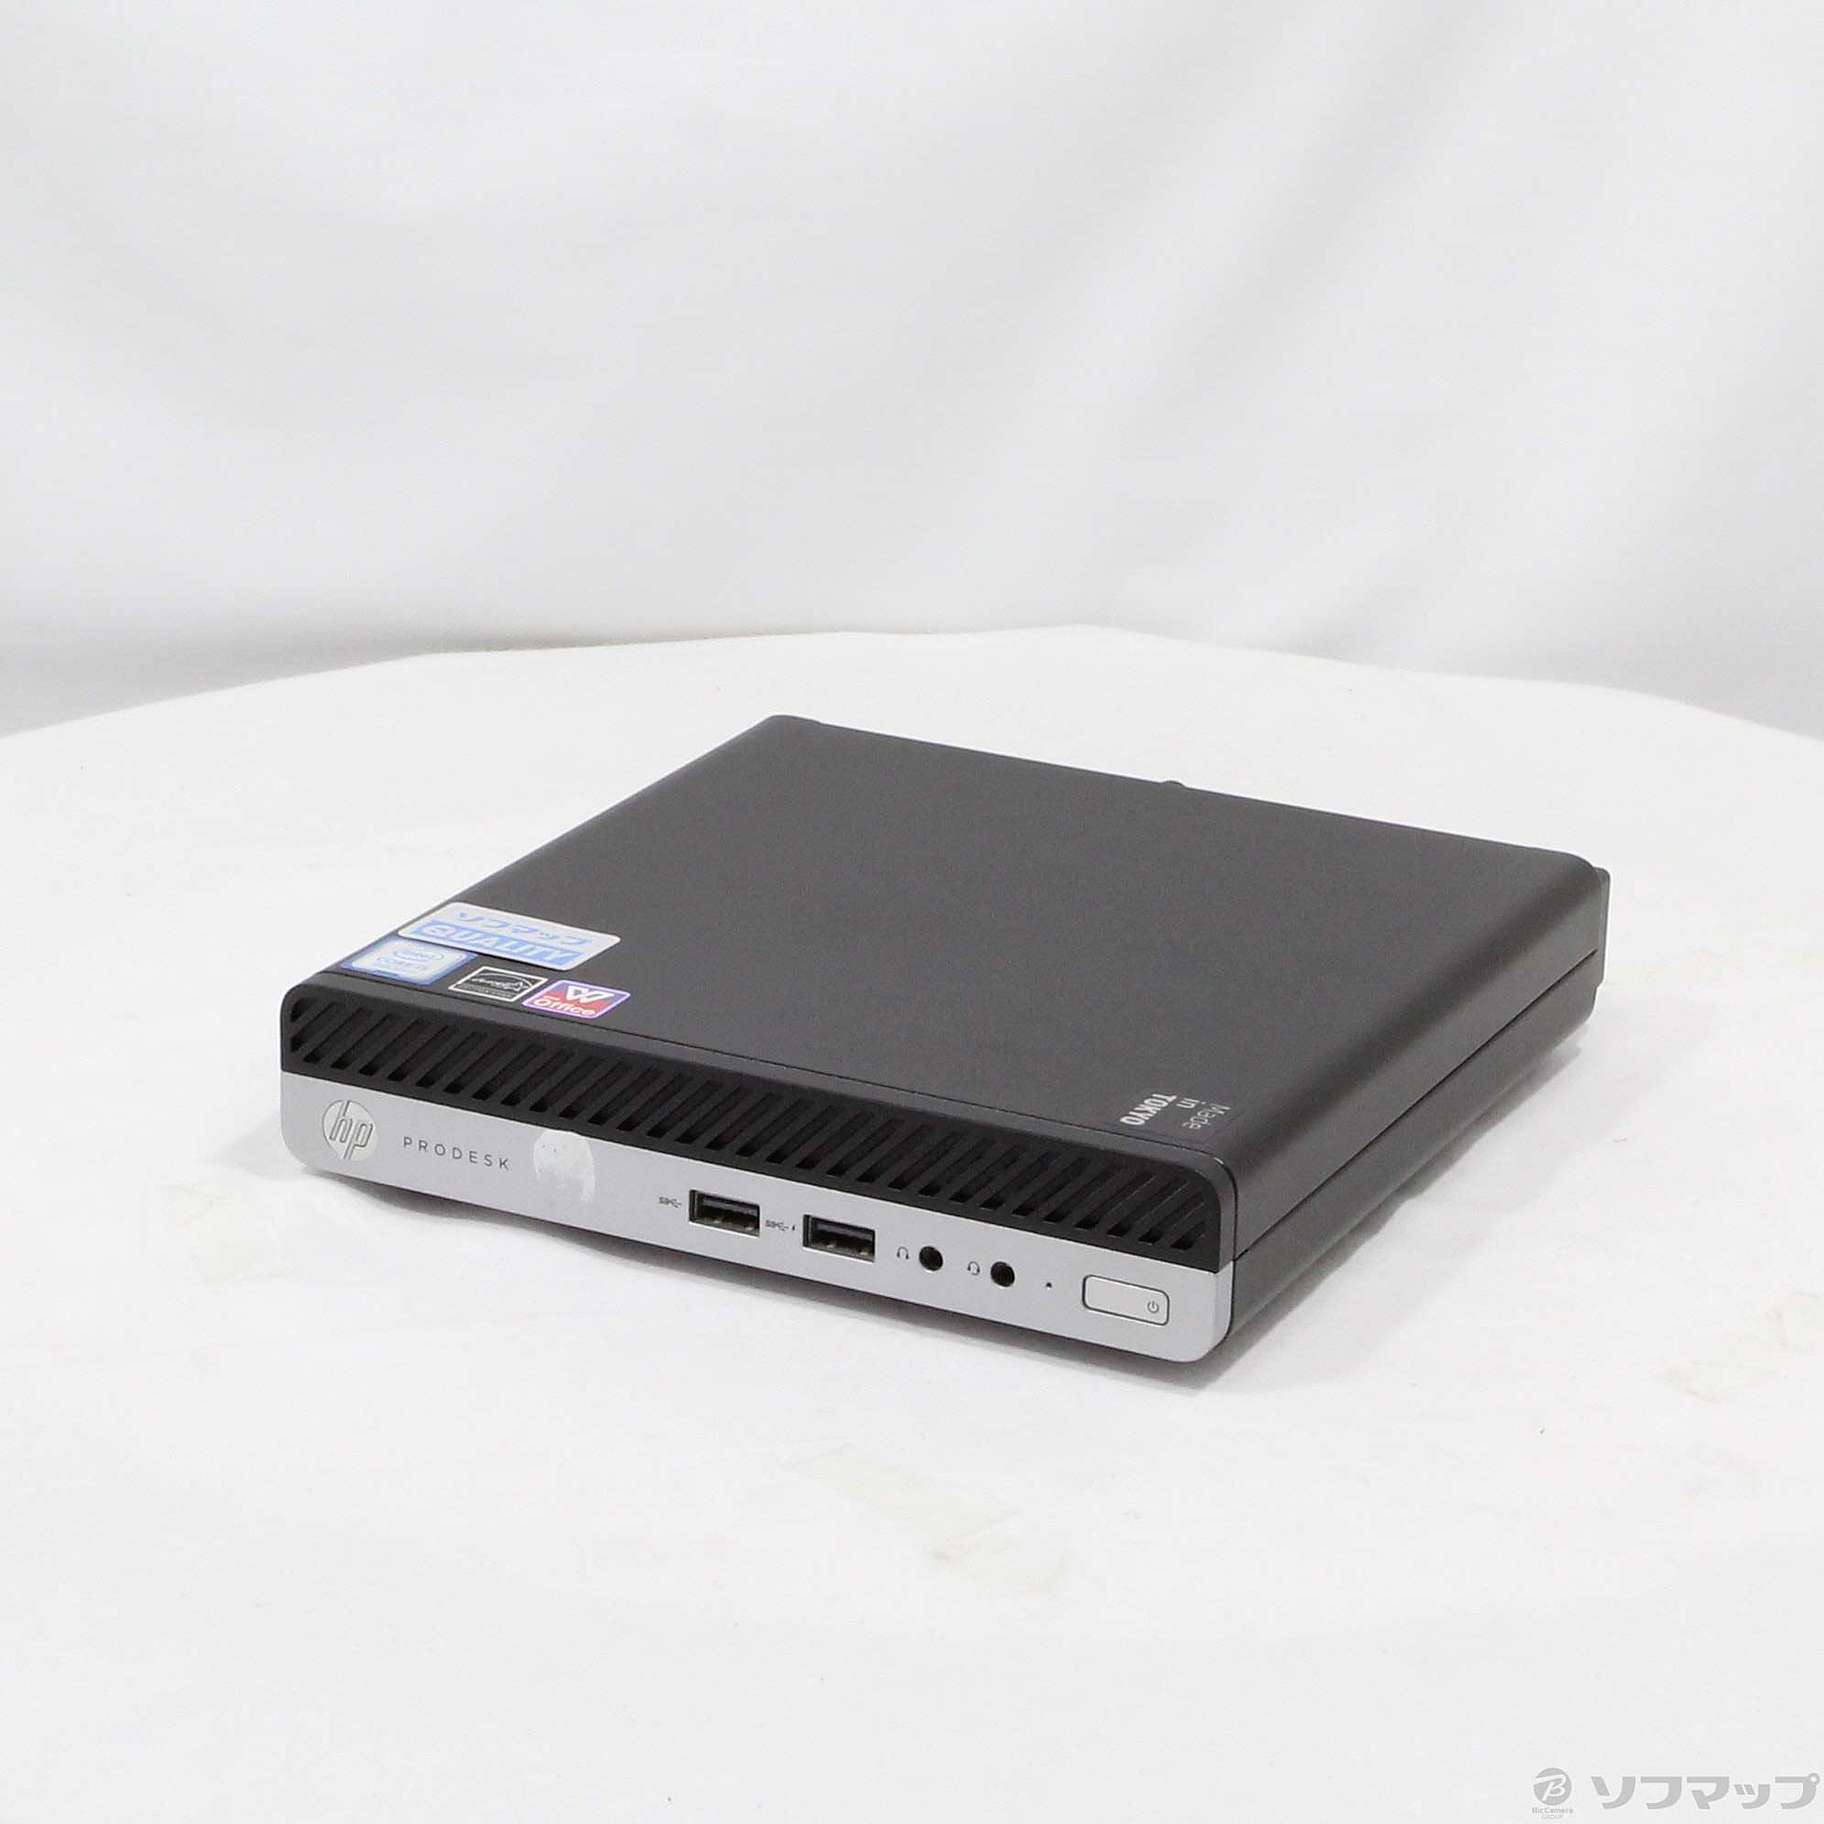 HP Prodesk 400 DM i5 8500T　SSD 256GB電源入れるとすぐに使用できます